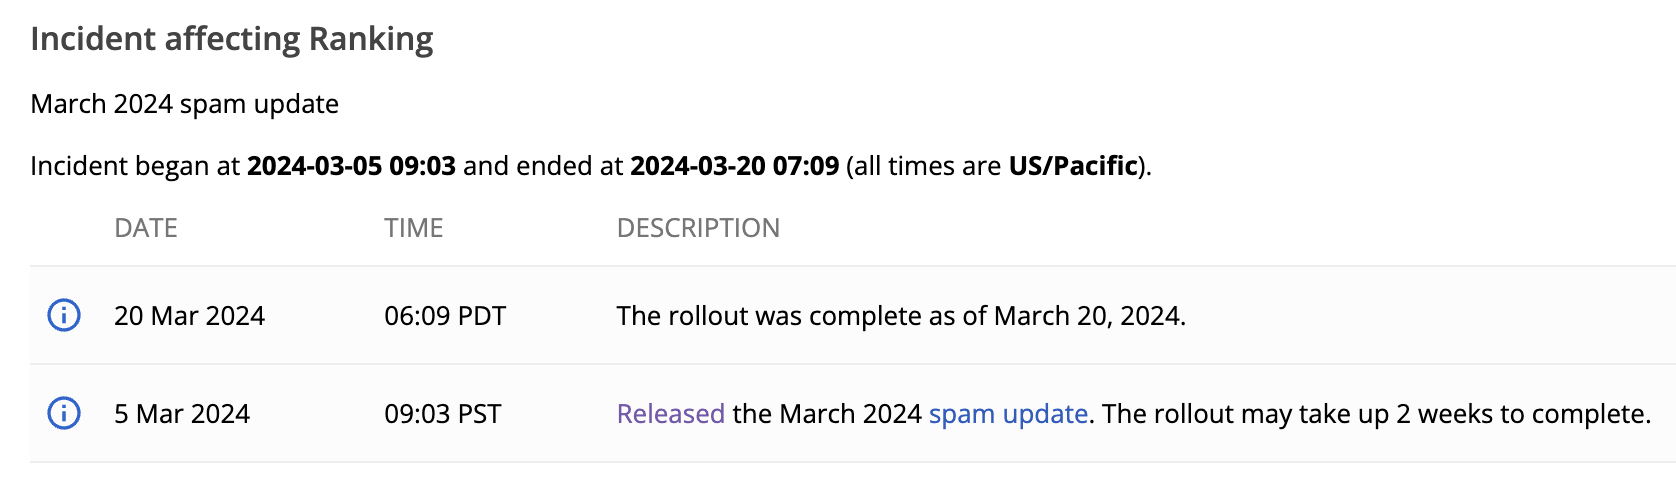 Google schließt das Spam-Update für März ab, das Kernupdate wird fortgesetzt